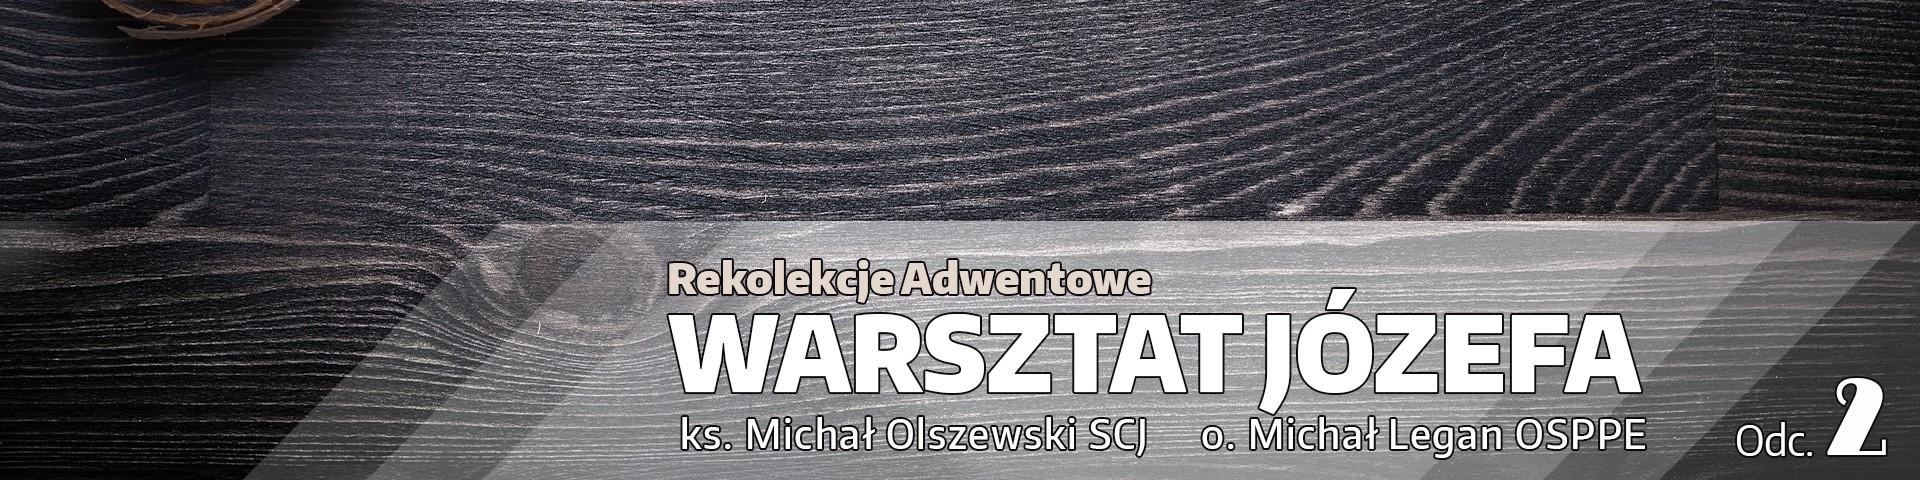 Rekolekcje Adwentowe 2021 „Warsztat Józefa” – Odcinek 2 "Ojciec czuły" – ks. Michał Olszewski SCJ i o. Michał Legan OSPPE (video)